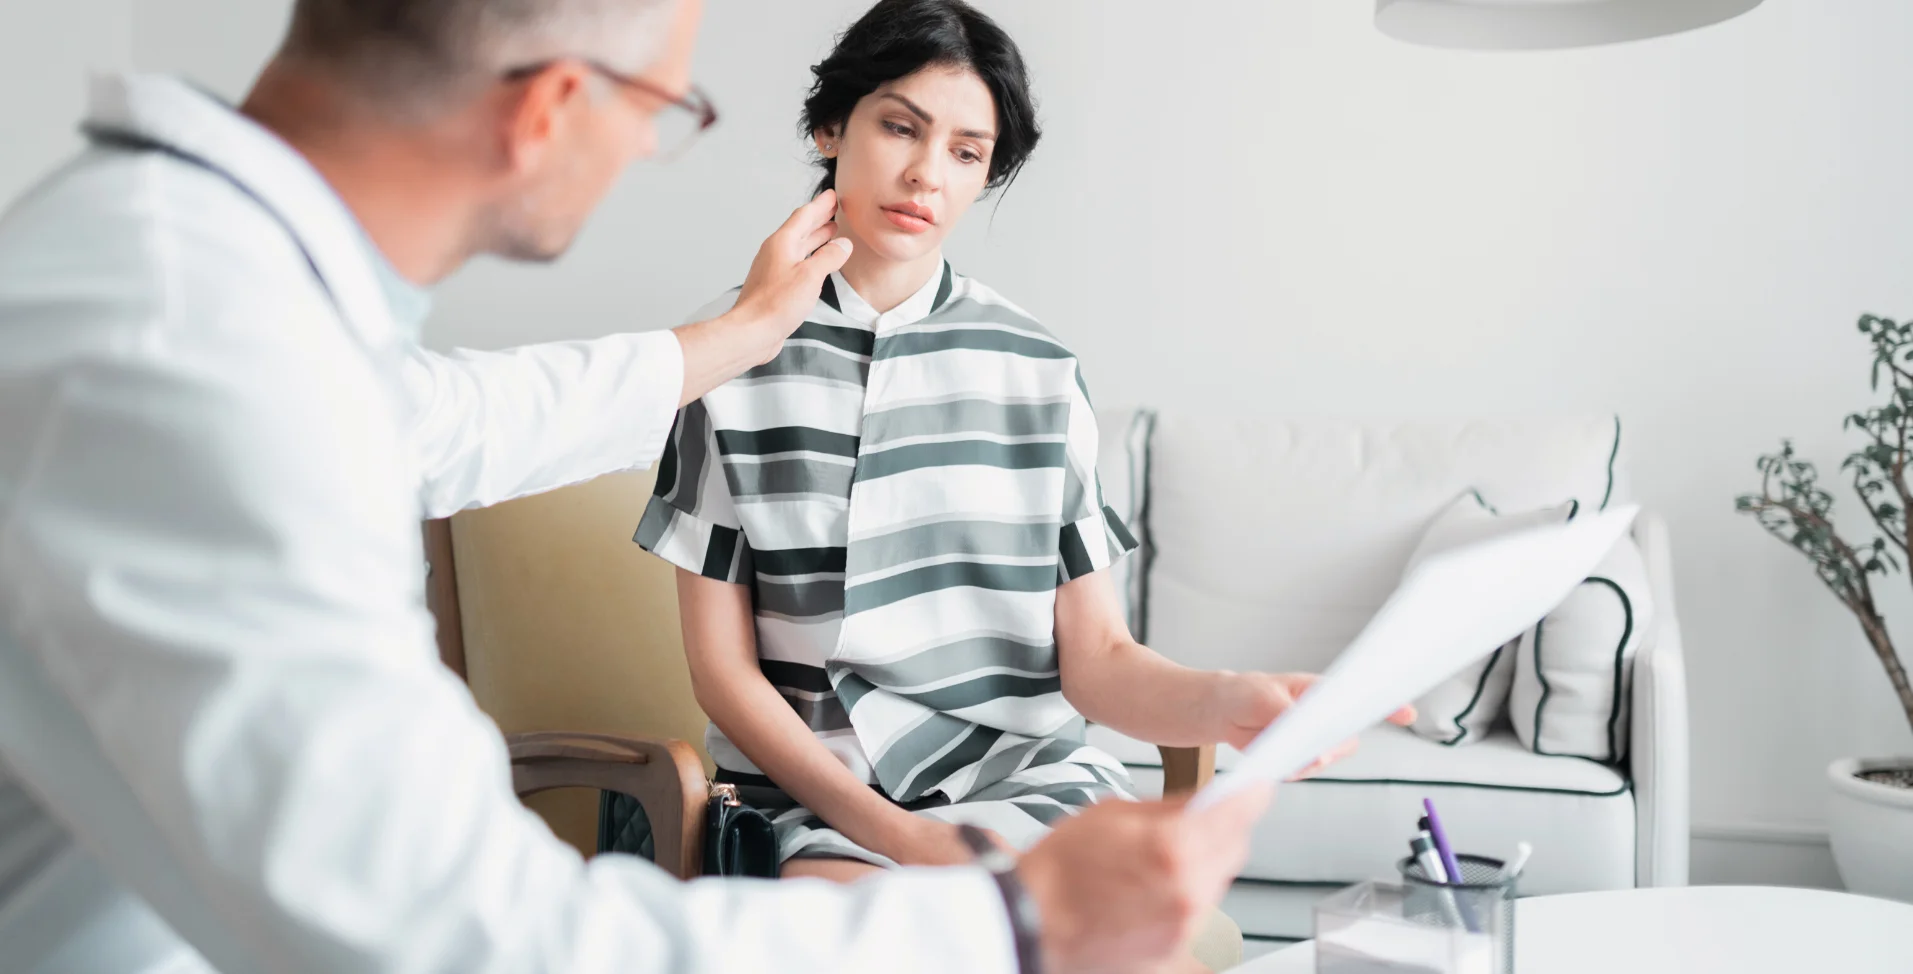 Medicina estética: Cómo gestionar las expectativas de tus pacientes